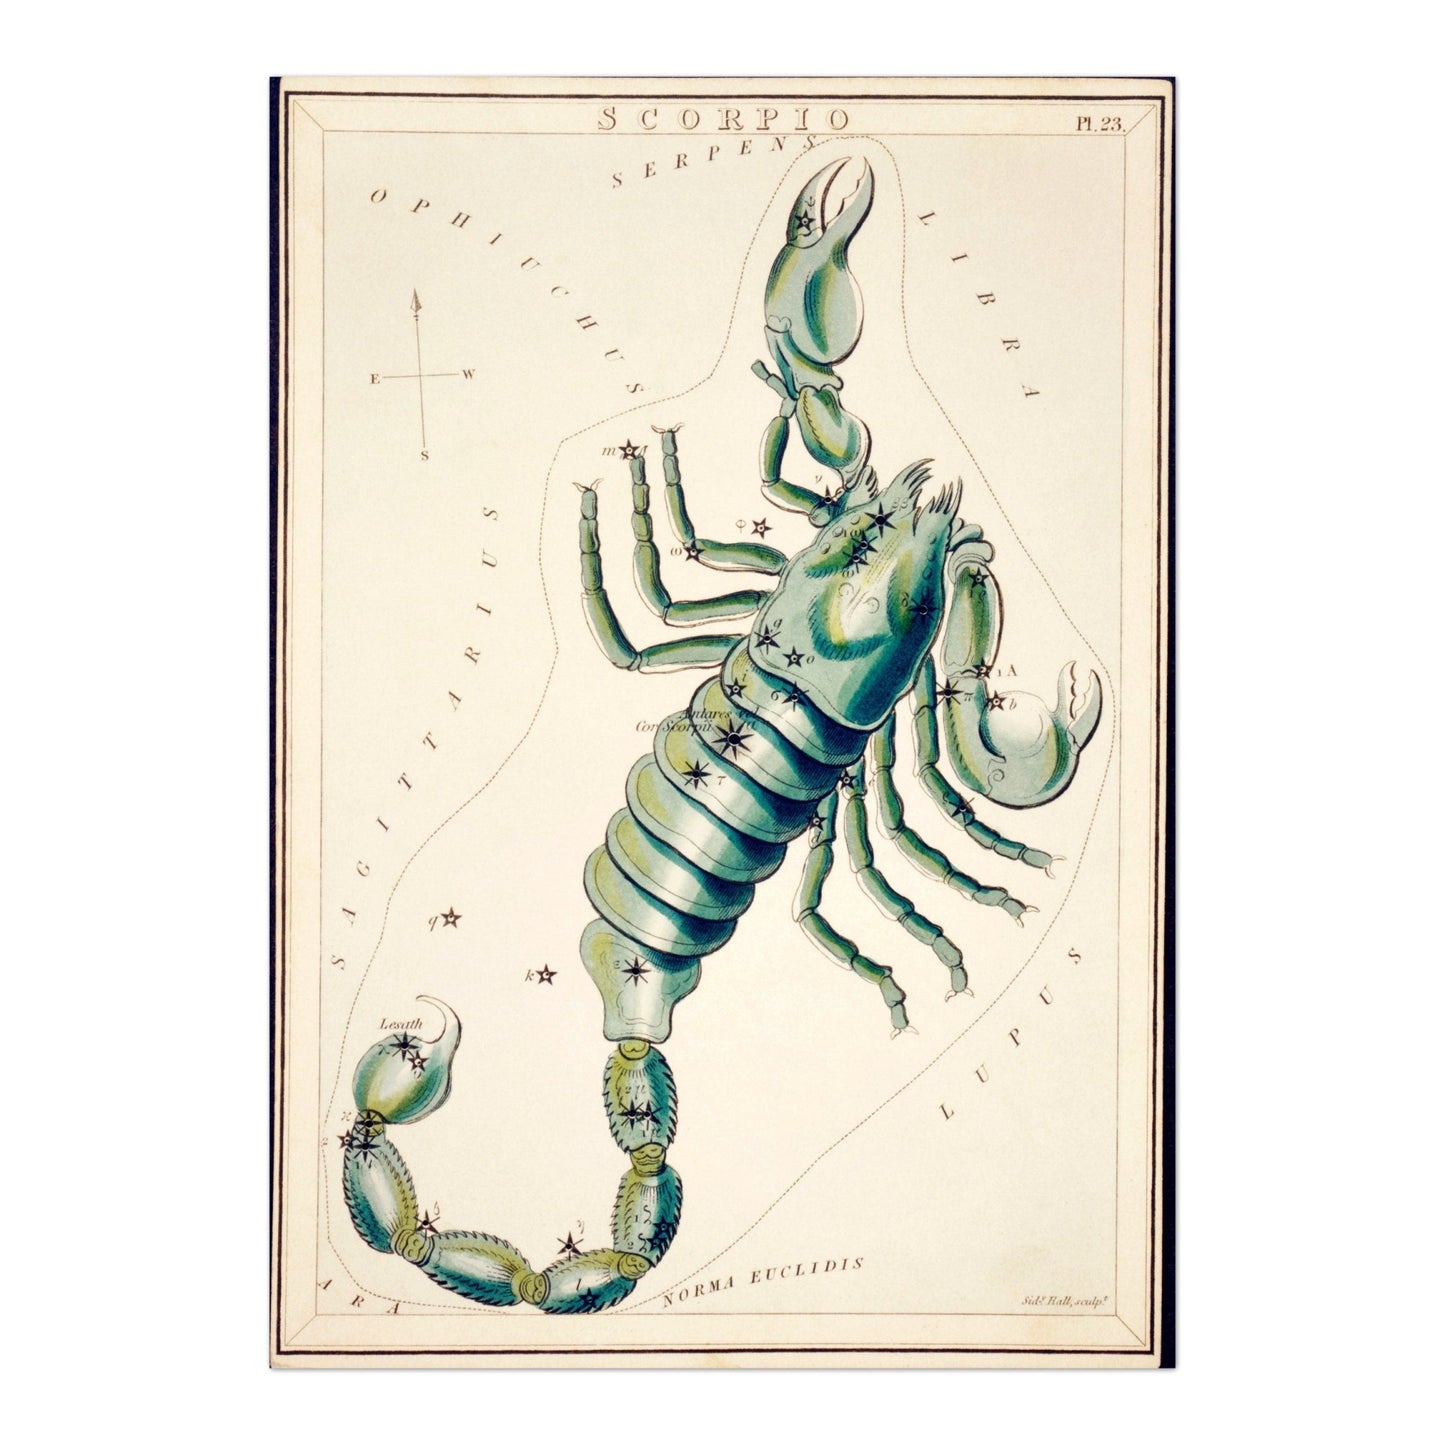 SKORPION – Sternbild Skorpion